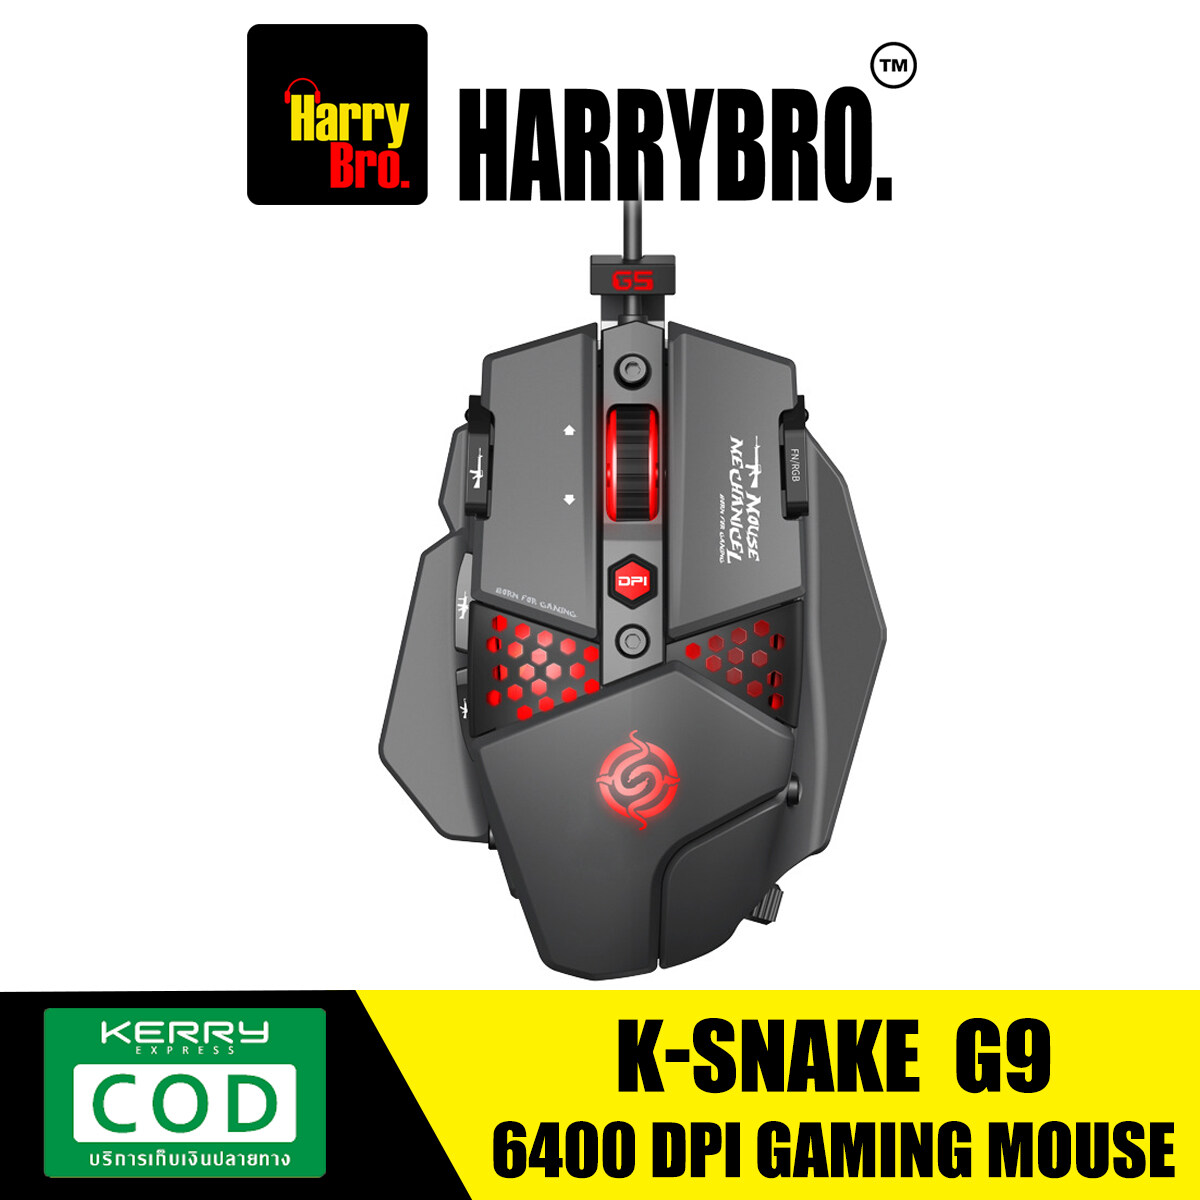 K-Snake G9 Gaming Mouse ปรับความละเอียดได้ 6 ระดับ สูงสุด 6400 (dpi) มีไฟ RGB เมาส์ เมาส์เกมมิ่ง เม้าเกมมิ่ง HarryBro